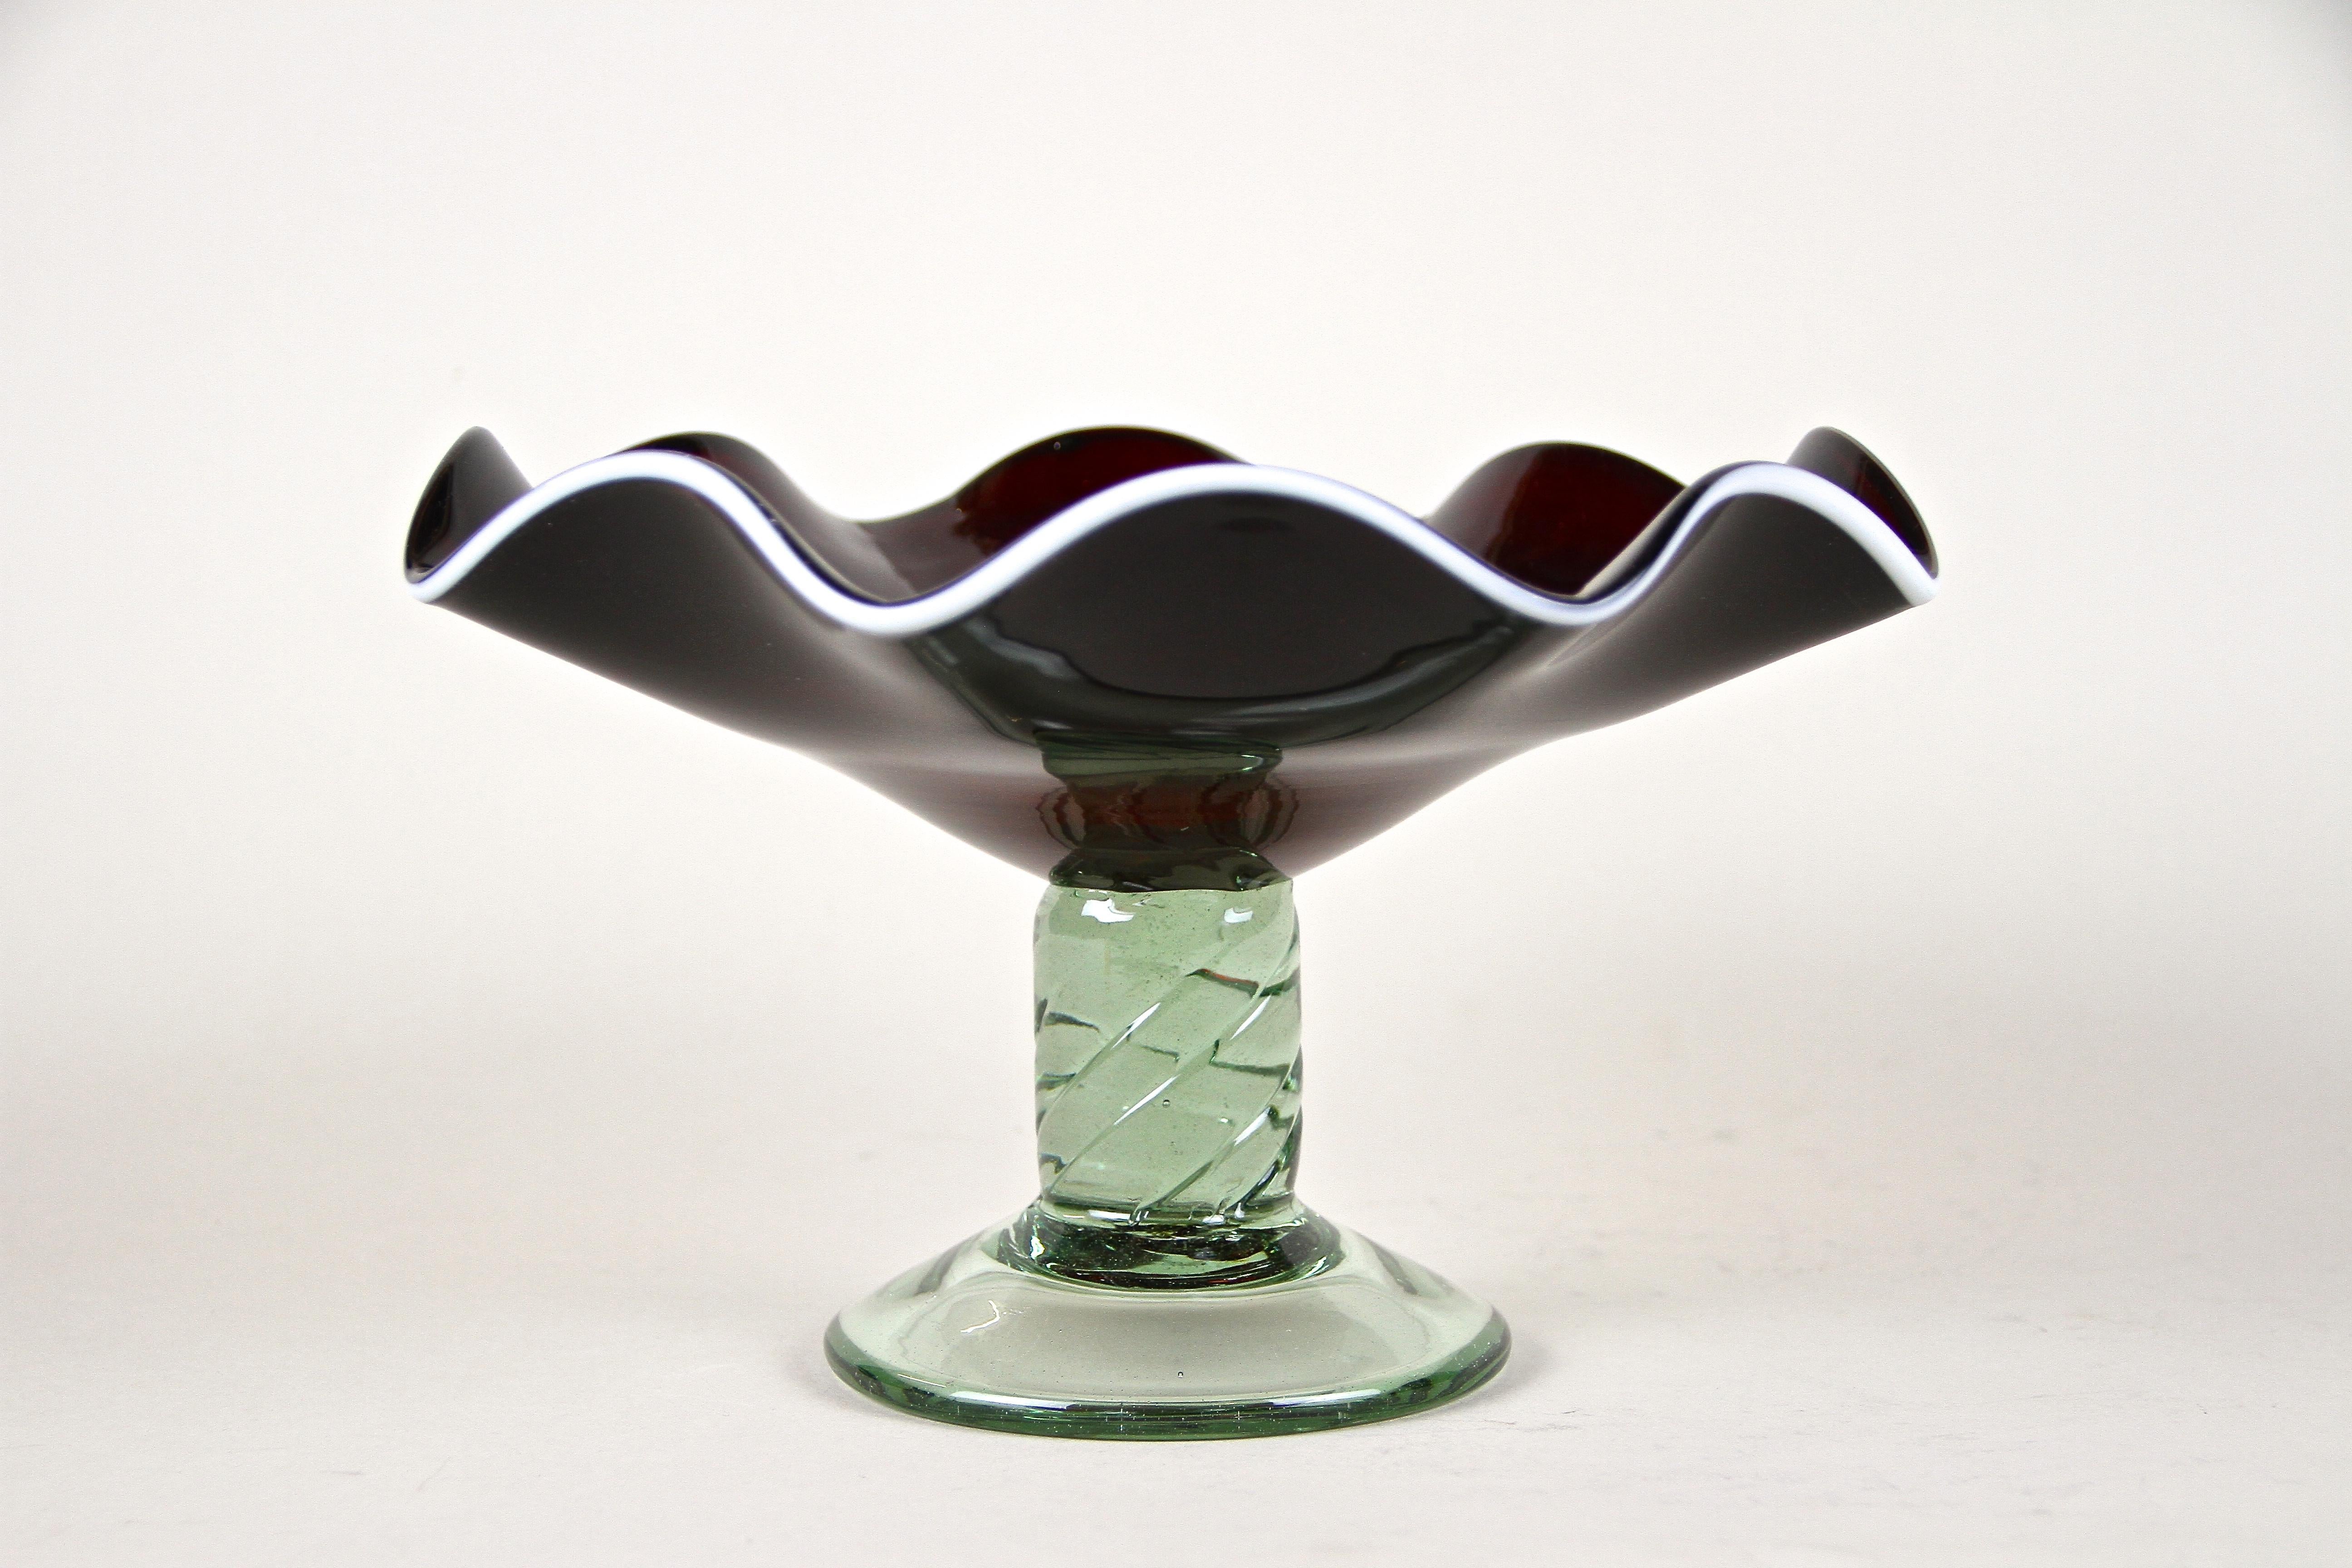 Wunderschöne Muranoglasschale aus Italien aus dem späten 20. Jahrhundert um 1970. Ein ungewöhnliches Stück Murano-Glaskunst mit toll geformter, super dunkelroter, fast schwarz aussehender, gewellter Glasschale. Verziert mit einem zusätzlichen zarten